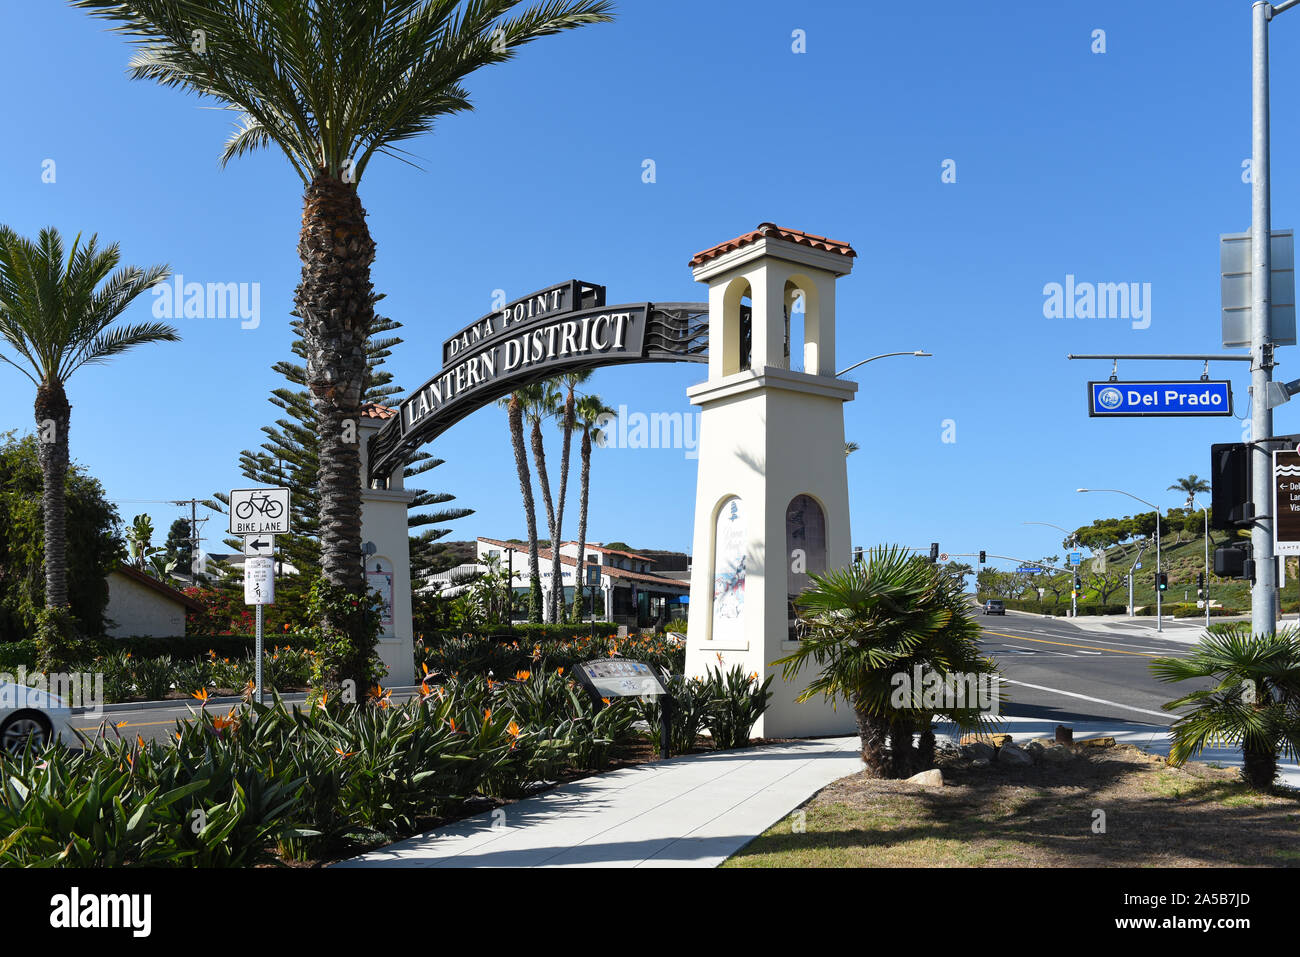 DANA POINT, CALIFORNIE - 18 OCT 2019 : La Lanterne signe District signale une zone de revitalisation en cours dans la ville de plage de la Californie du Sud. Banque D'Images